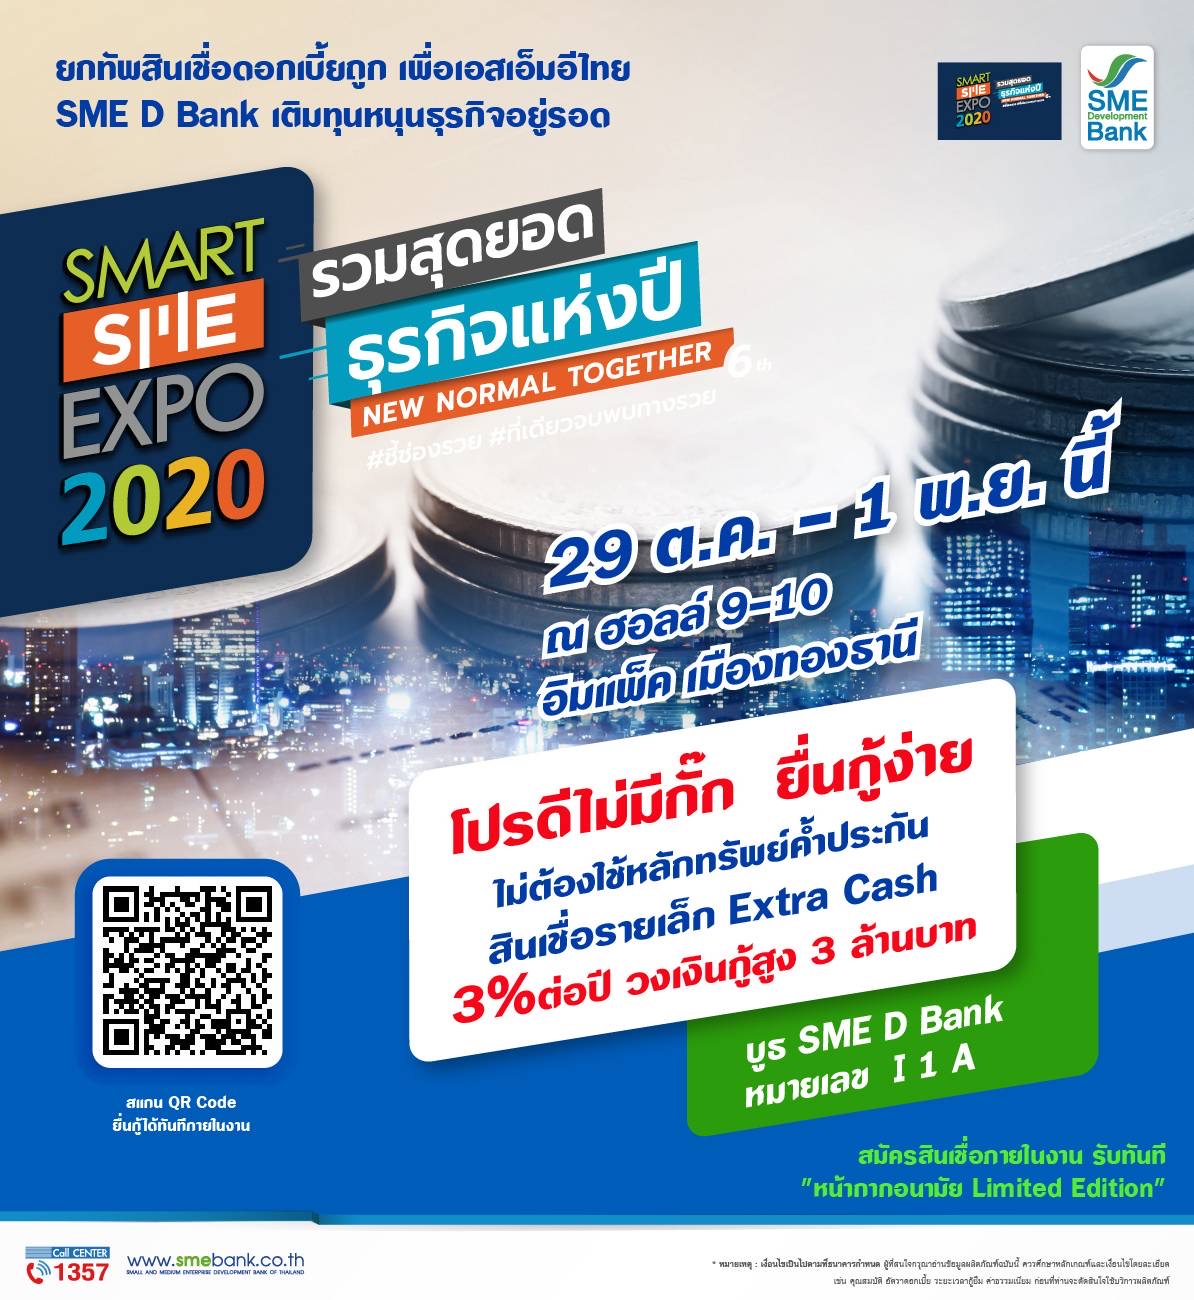 SME D Bank จัดโปรดีไม่มีกั๊กร่วมงาน ‘Smart SME Expo 2020’ เสริมสภาพคล่อง